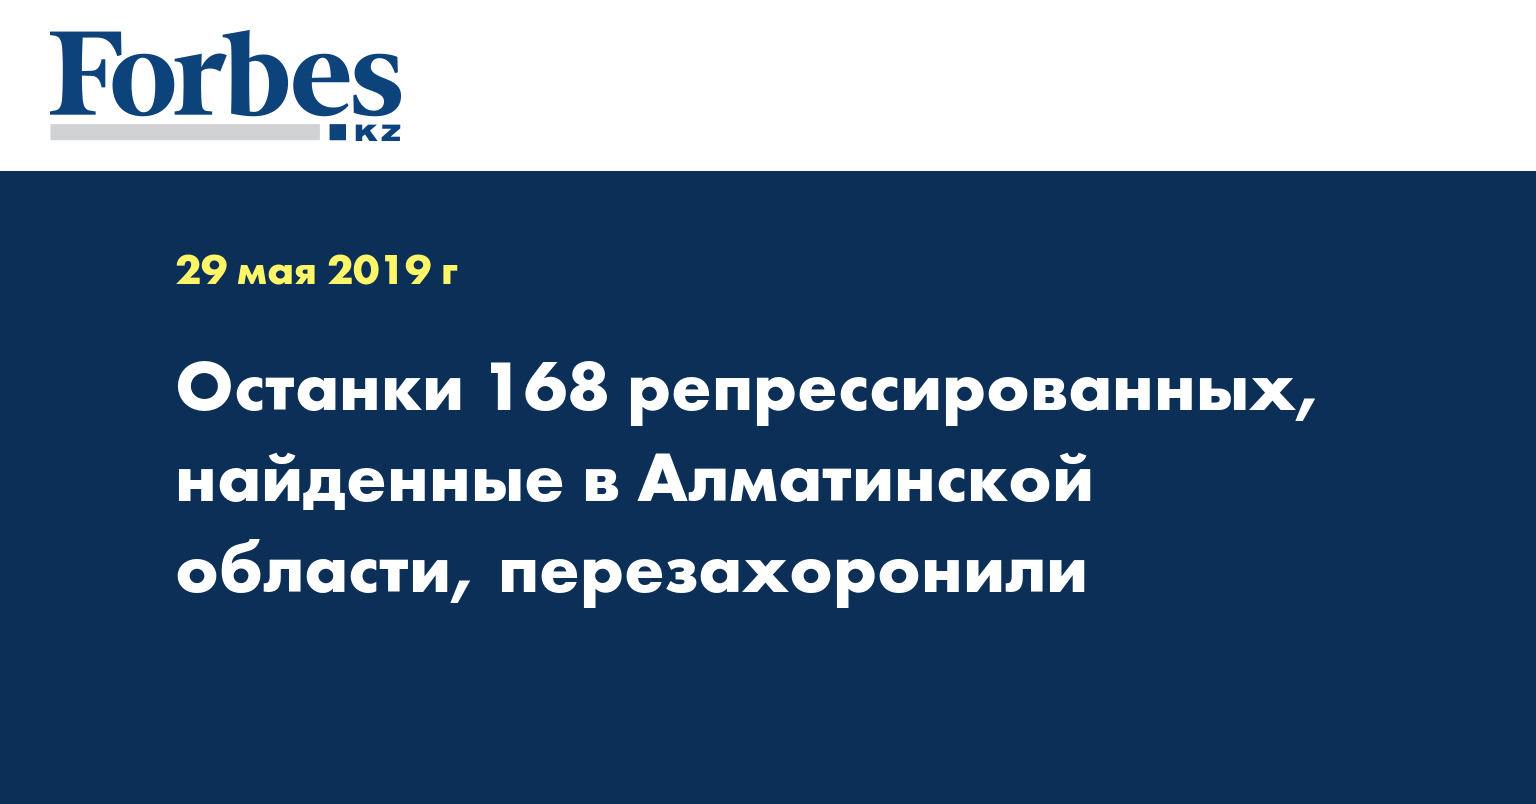 Останки 168 репрессированных, найденные в Алматинской области, перезахоронили